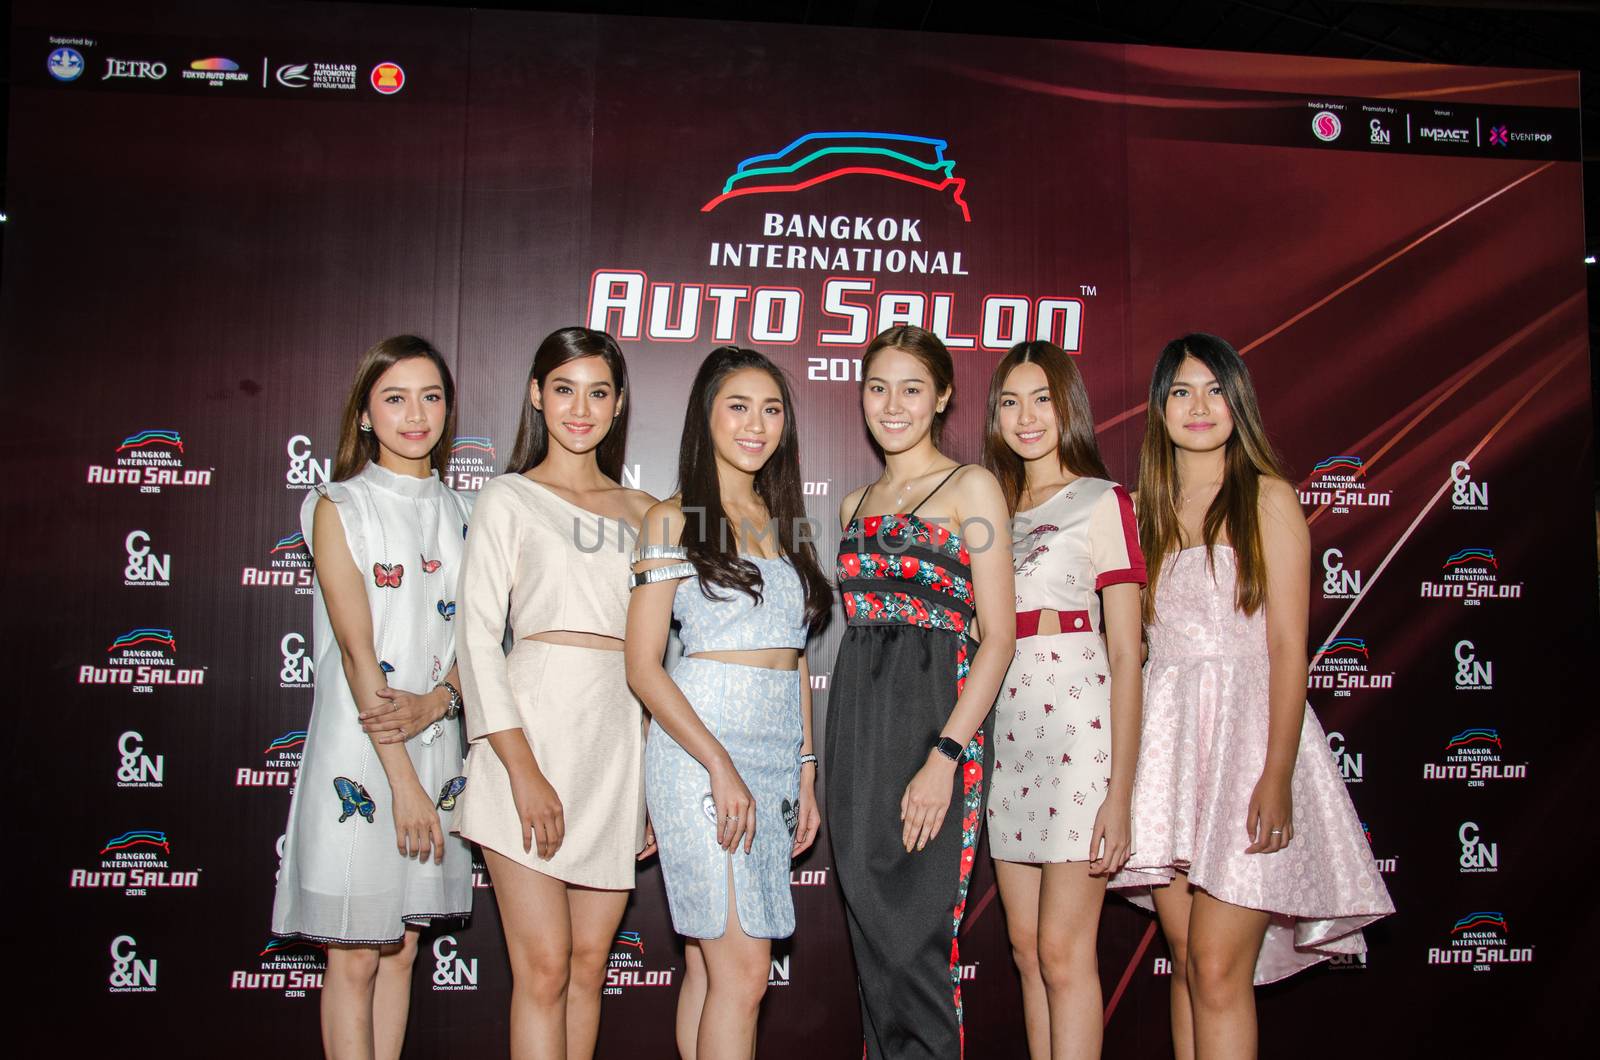 Bangkok International Auto Salon 2016 by chatchai